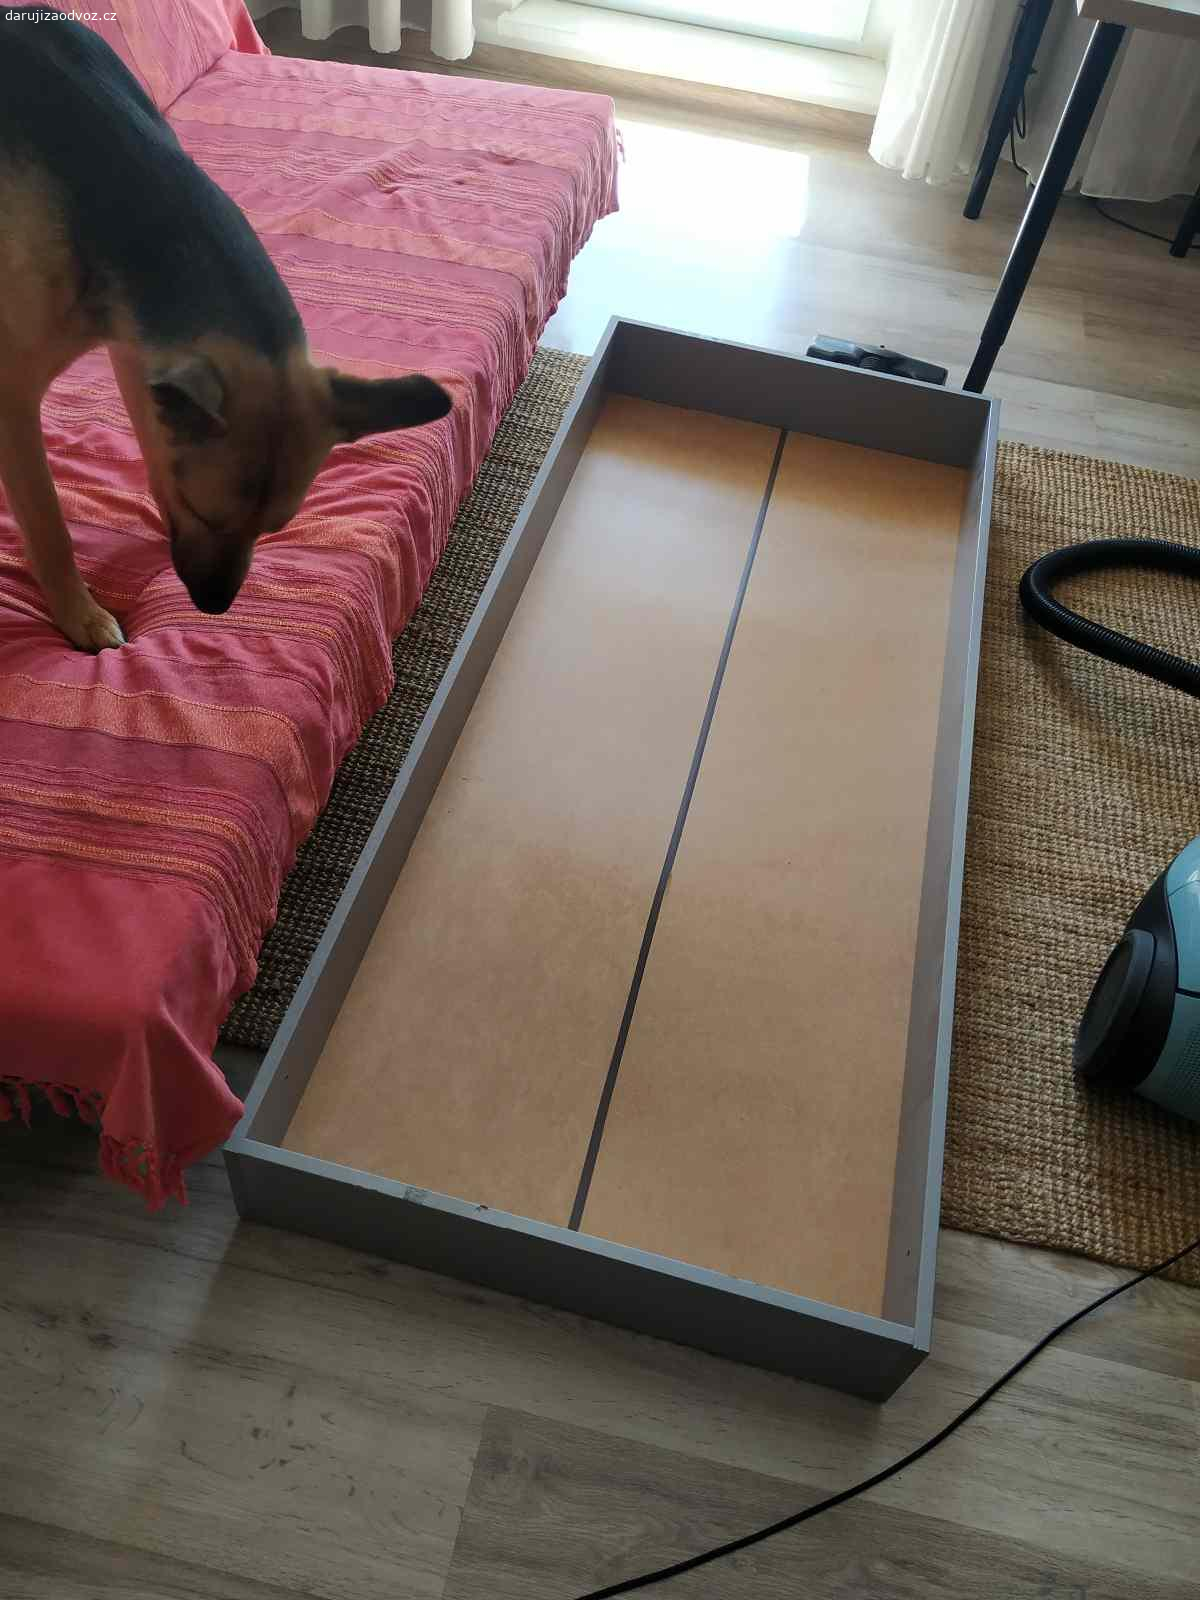 Daruji úložný prostor pod gauč nebo postel. Původně z IKEA a pod gauč, ale vlezl se i pod postel, když bylo potřeba. Rozměry: výška 16 cm, šířka (hloubka) 69 cm, délka 165 cm.